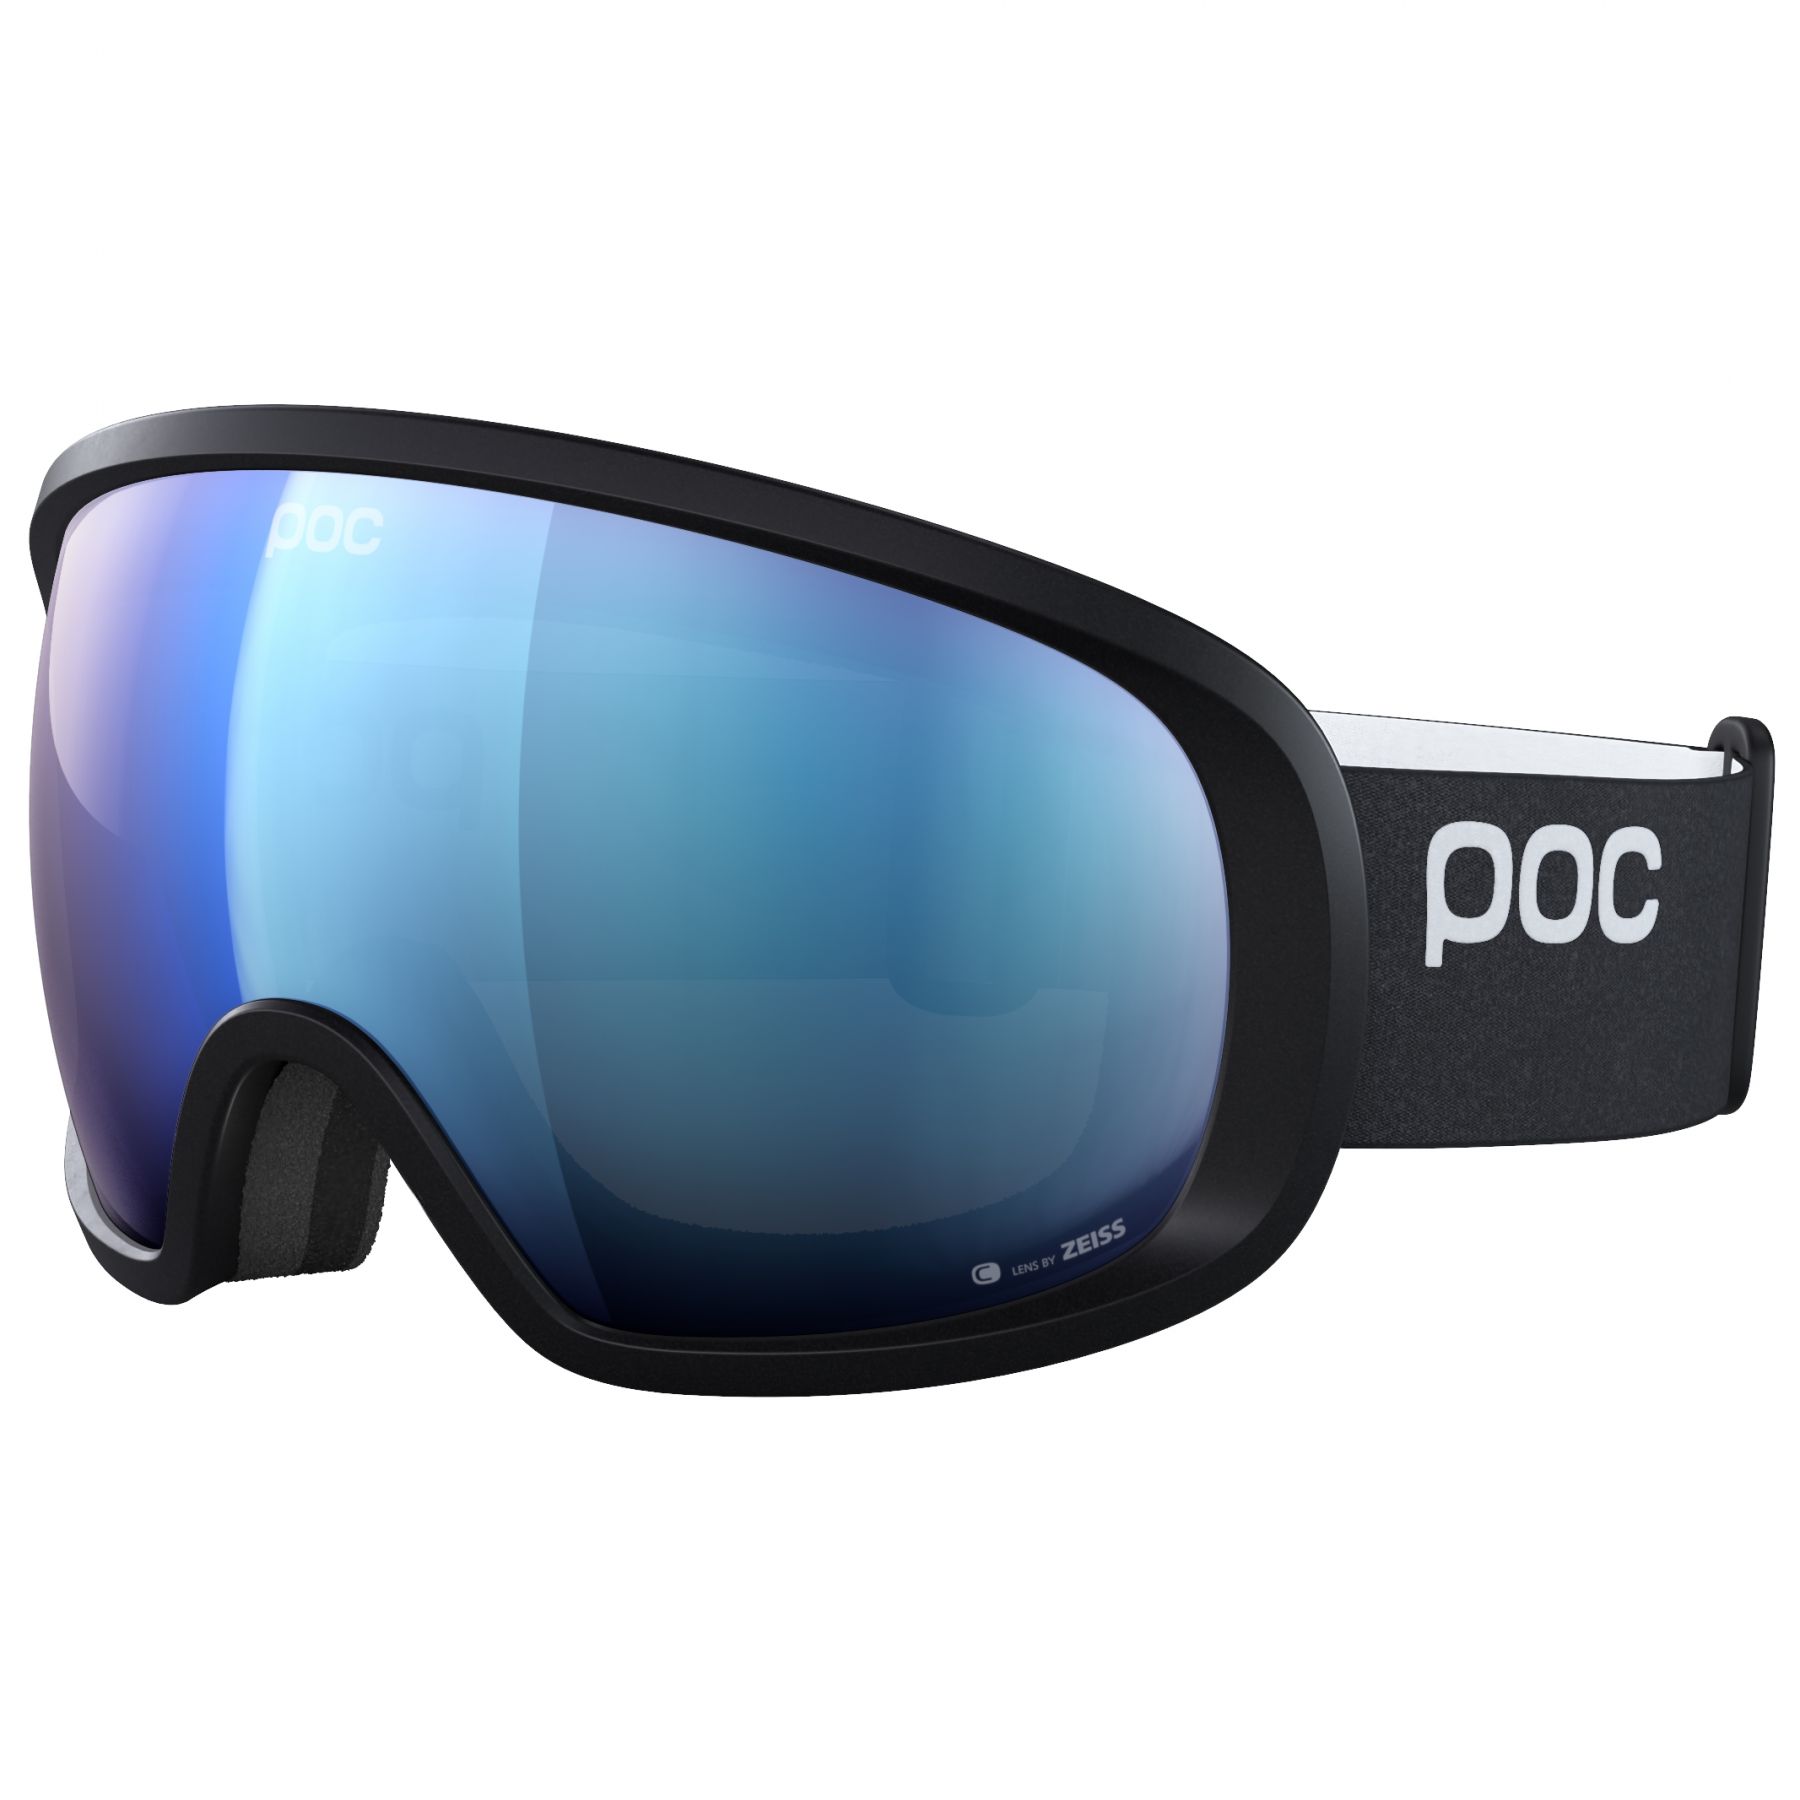 Billede af POC Fovea, skibriller, uranium black hos Skisport.dk